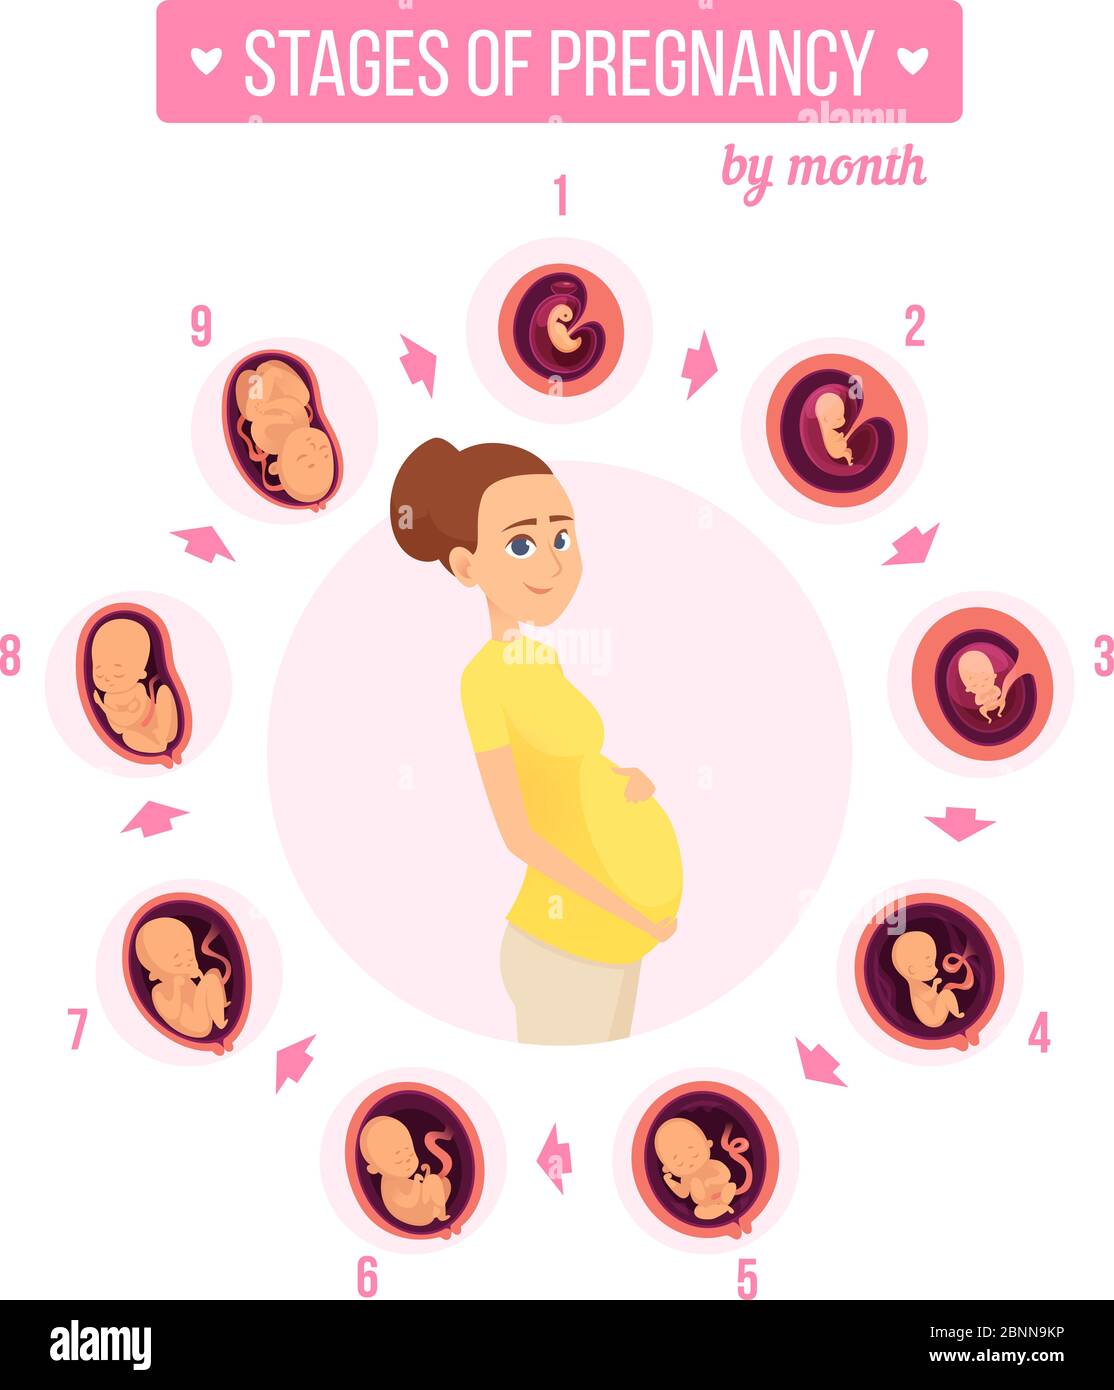 Infografica sul trimestre di gravidanza. Stadi di crescita umana sviluppo del neonato uova embrione fertilità illustrazioni vettoriali Illustrazione Vettoriale